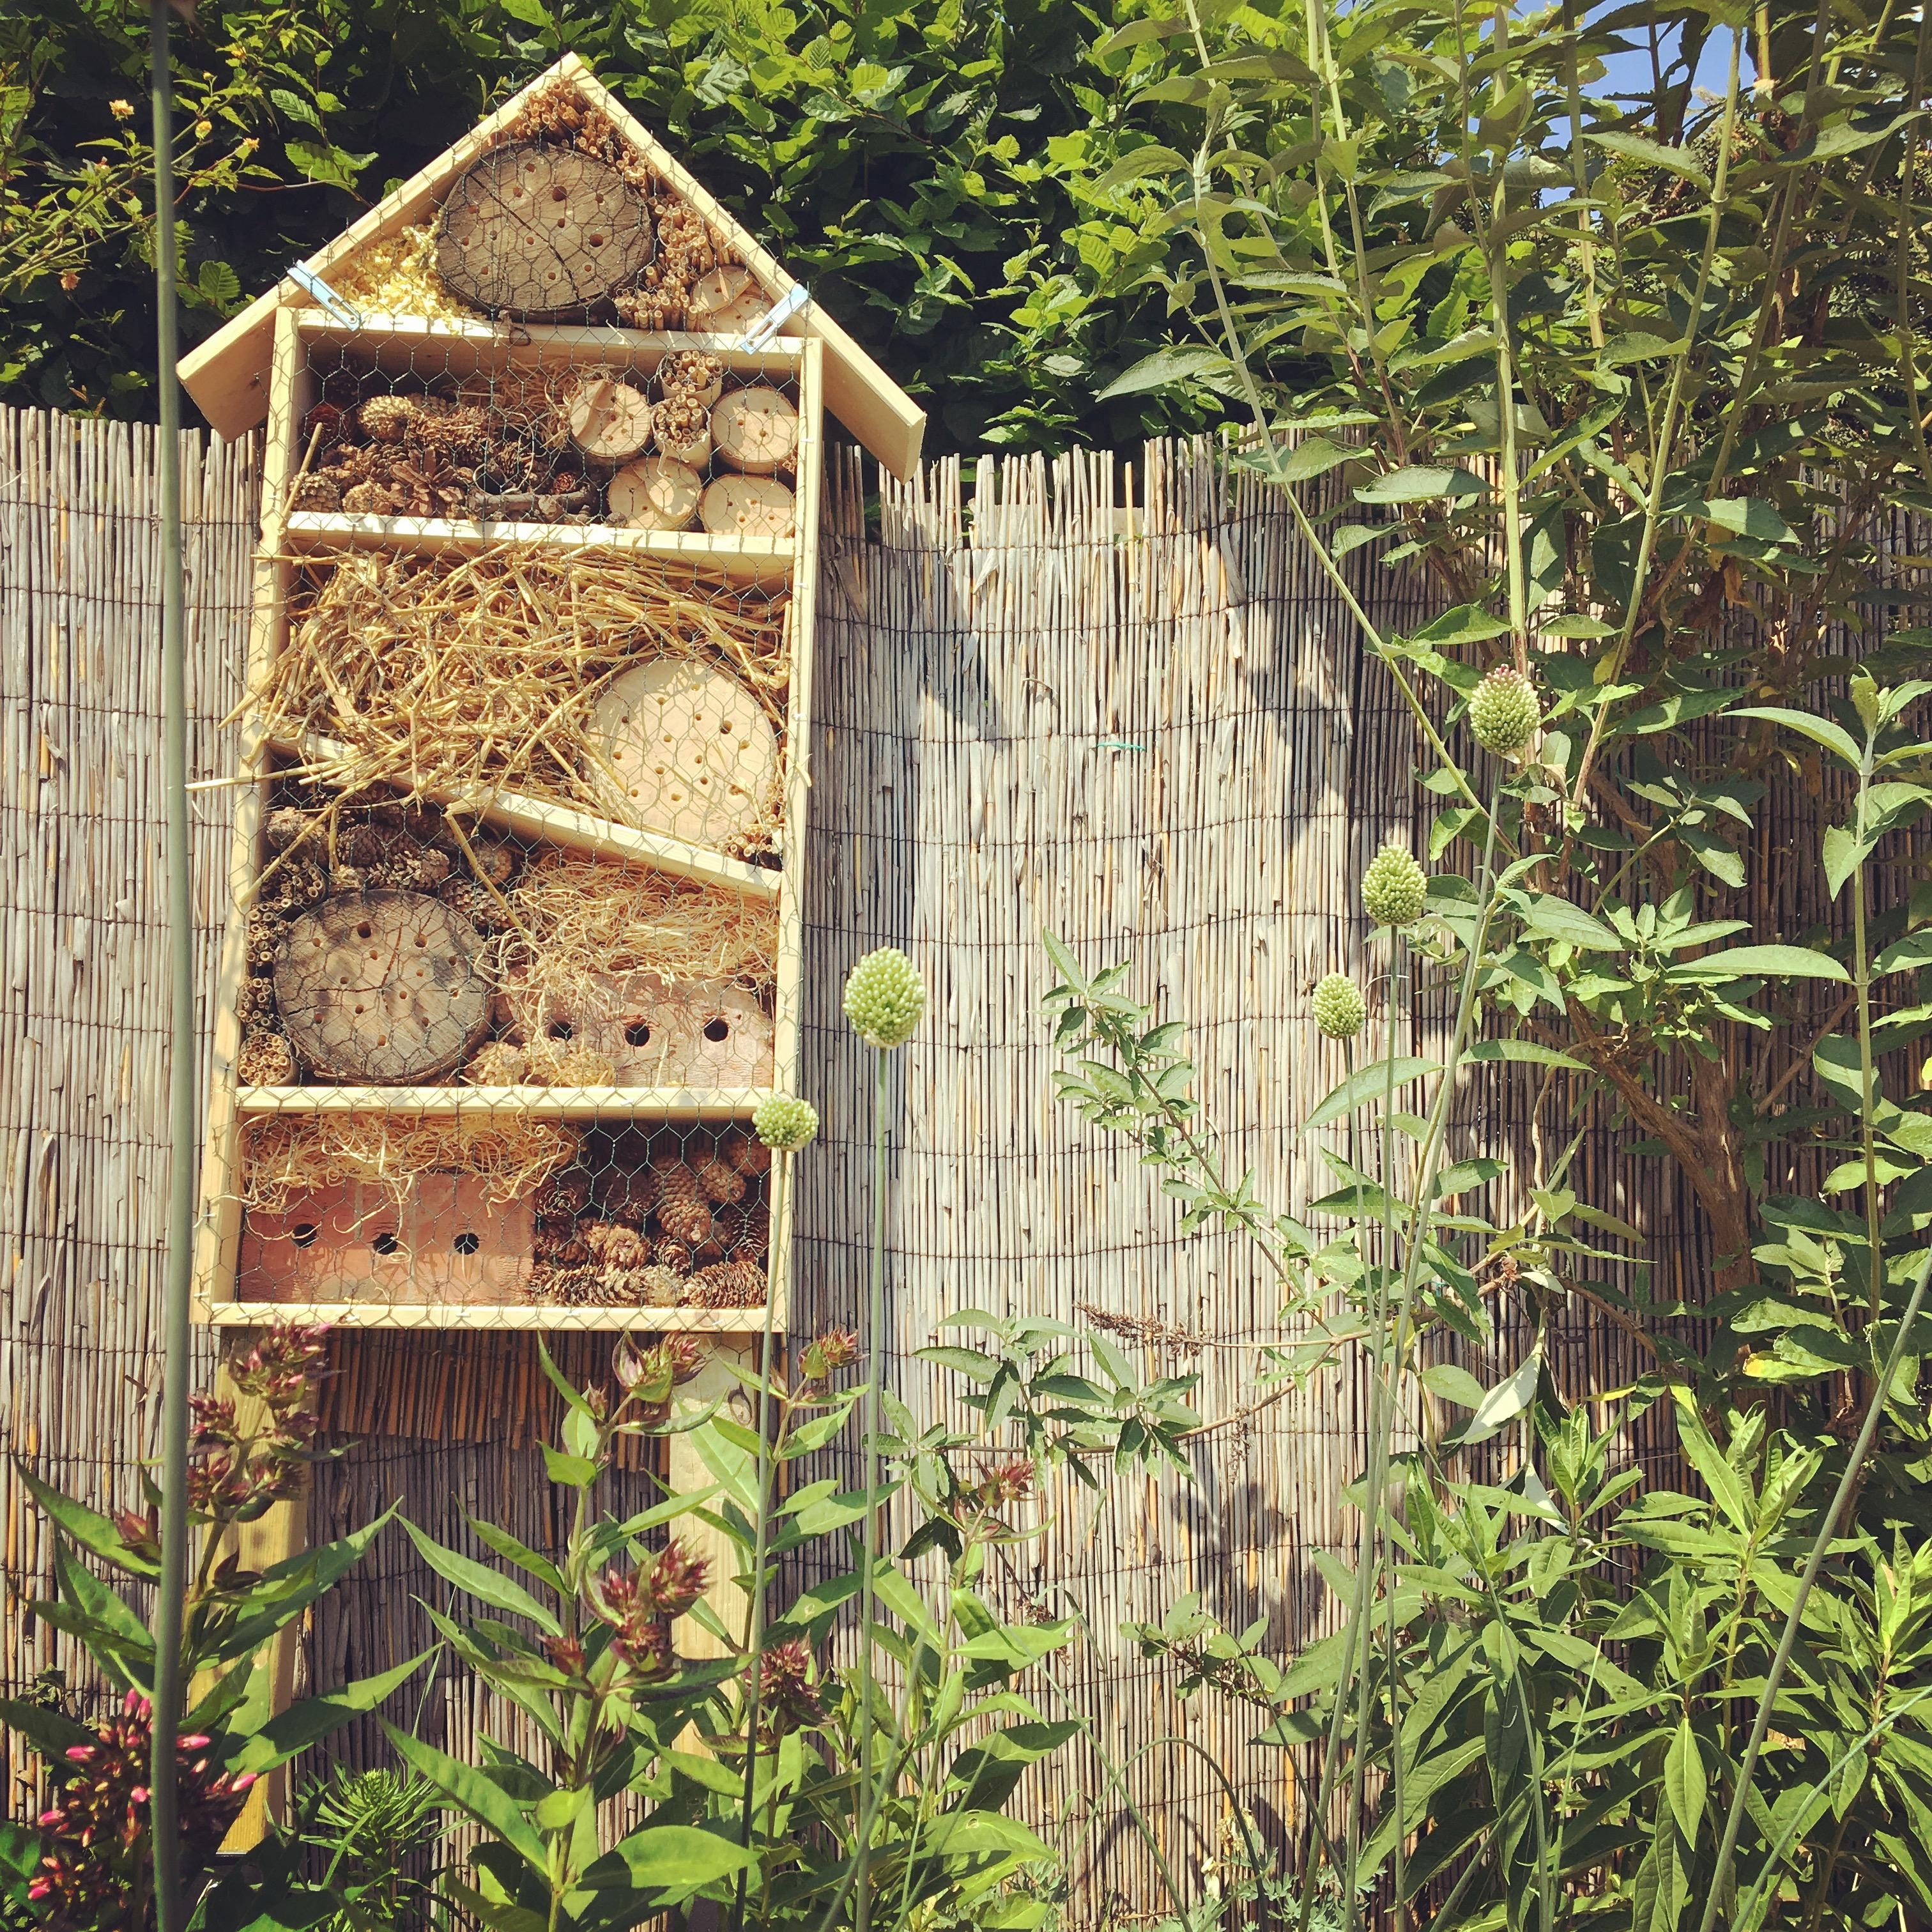 #diy Projekt heute erfolgreich beendet: #insektenhotel 
Herzliche Willkommen ihr kleinen #gäste 
#garten #garden 